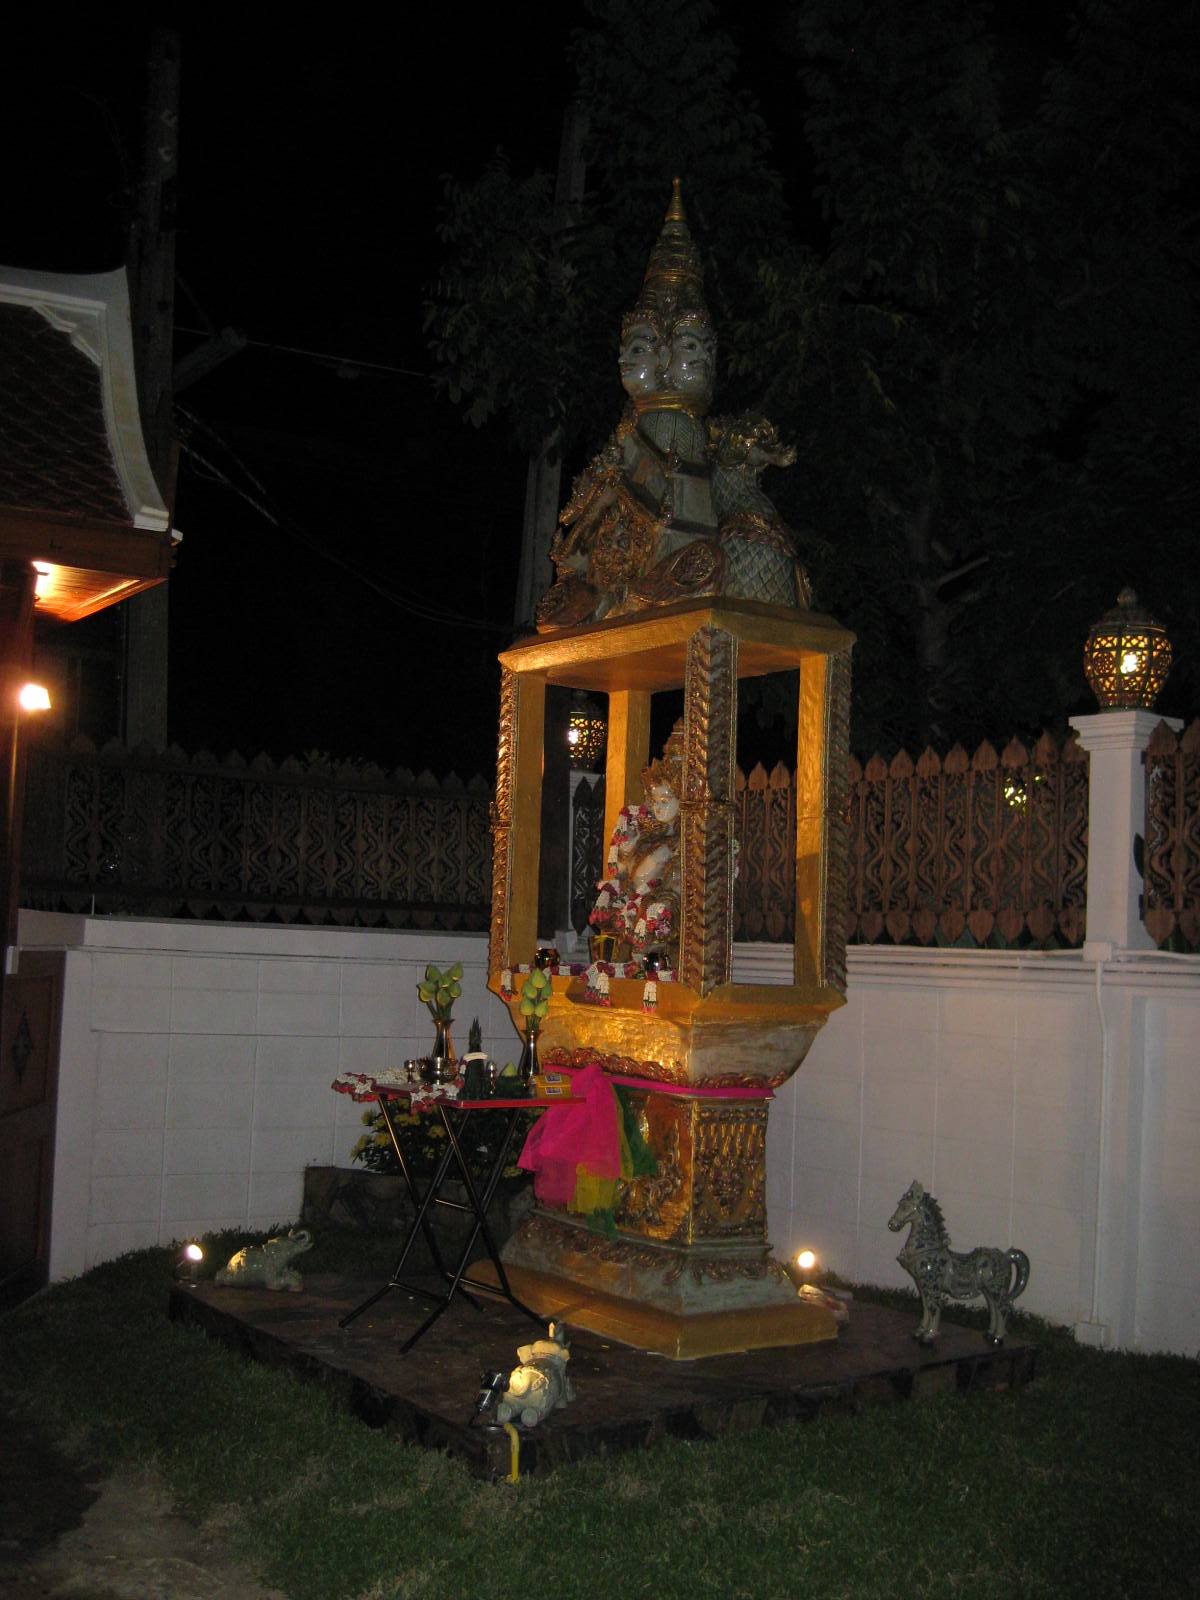 Night View of Pra Prom Statue